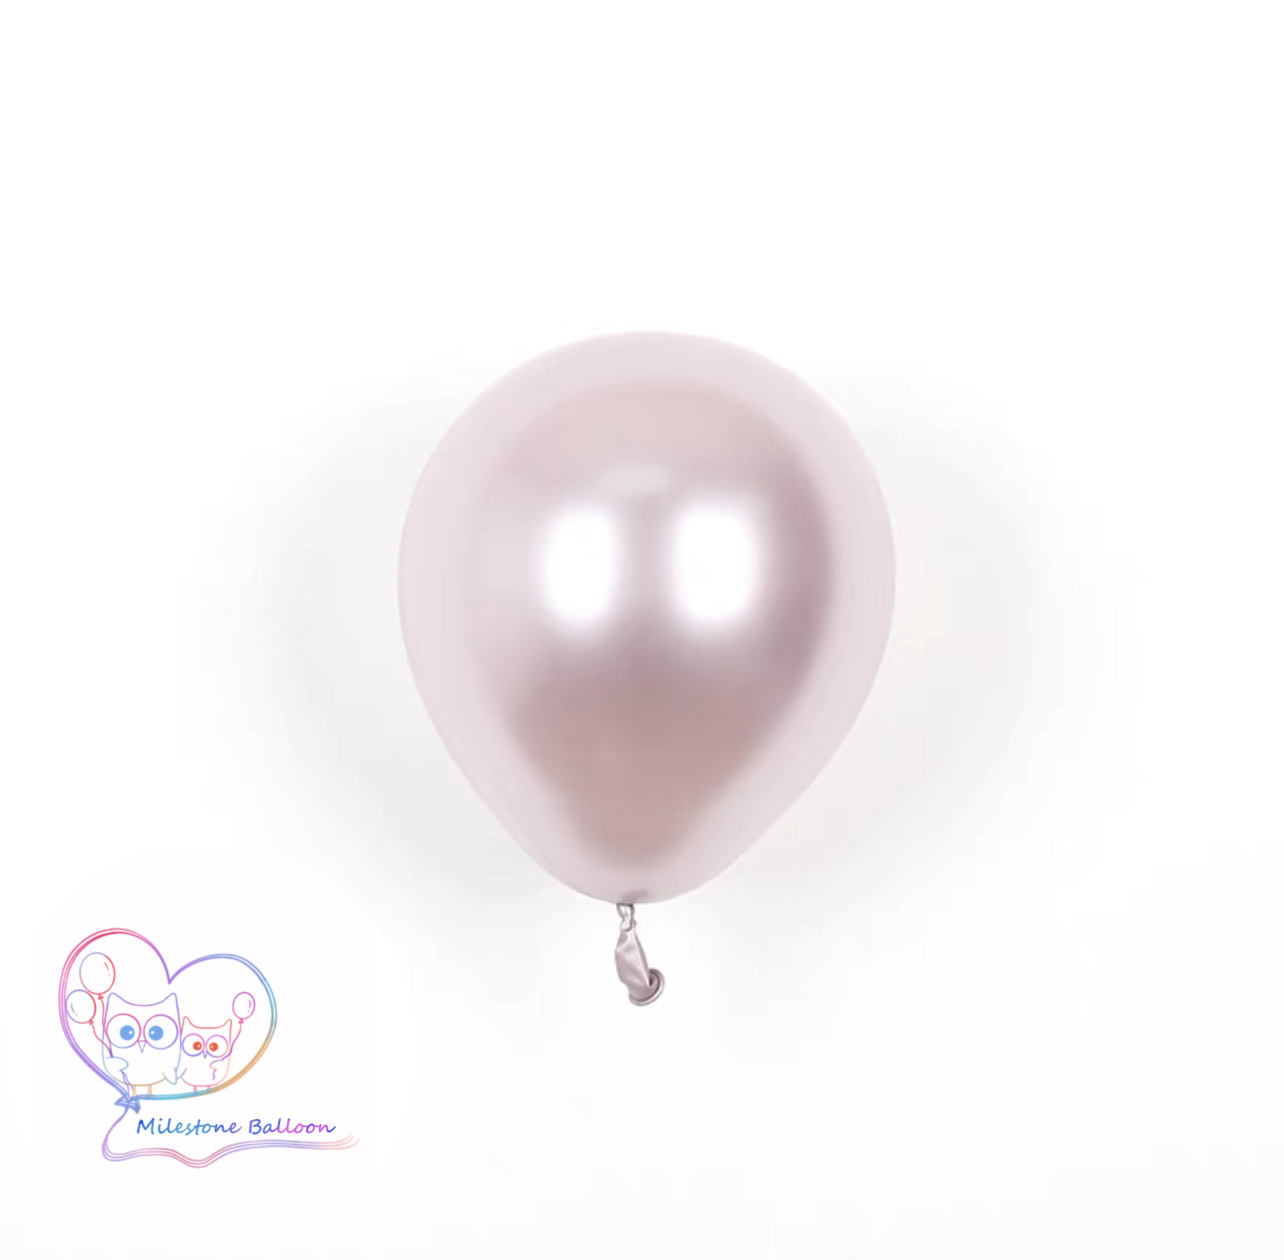 5吋金屬色氣球 (粉色) (1pc) 5LBM8